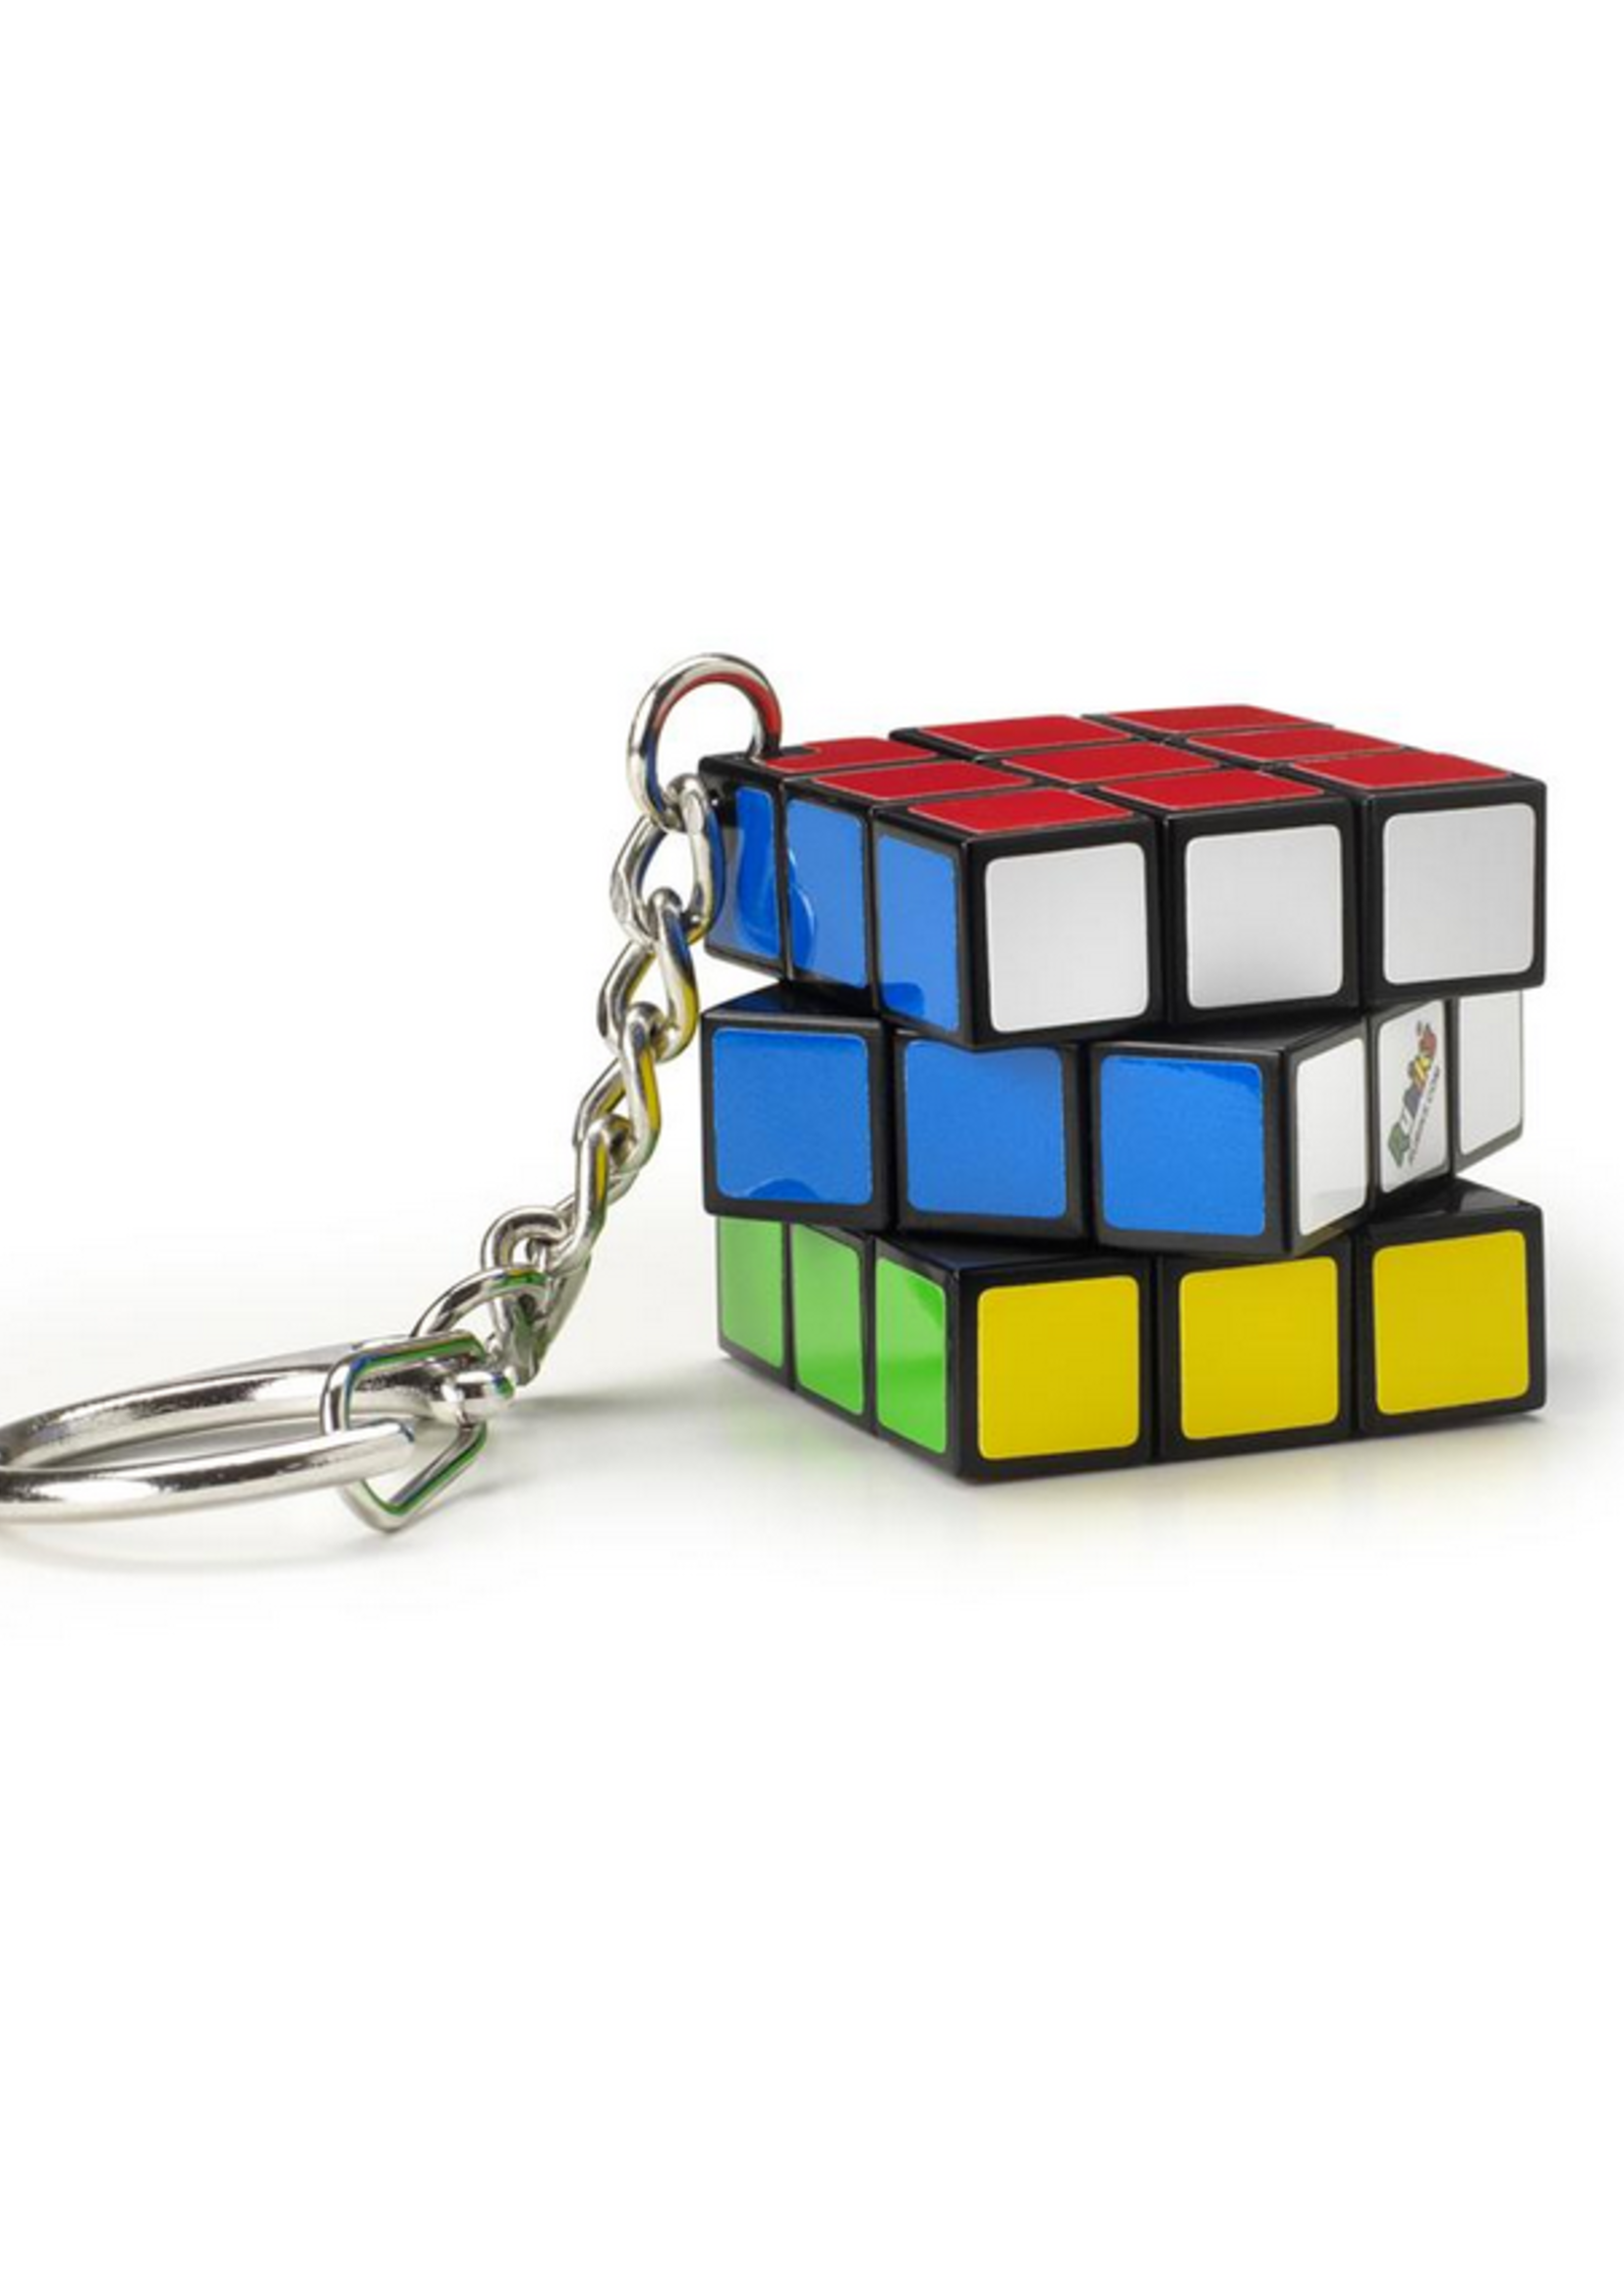 Rubik's Rubiks keychain 3x3 cdu